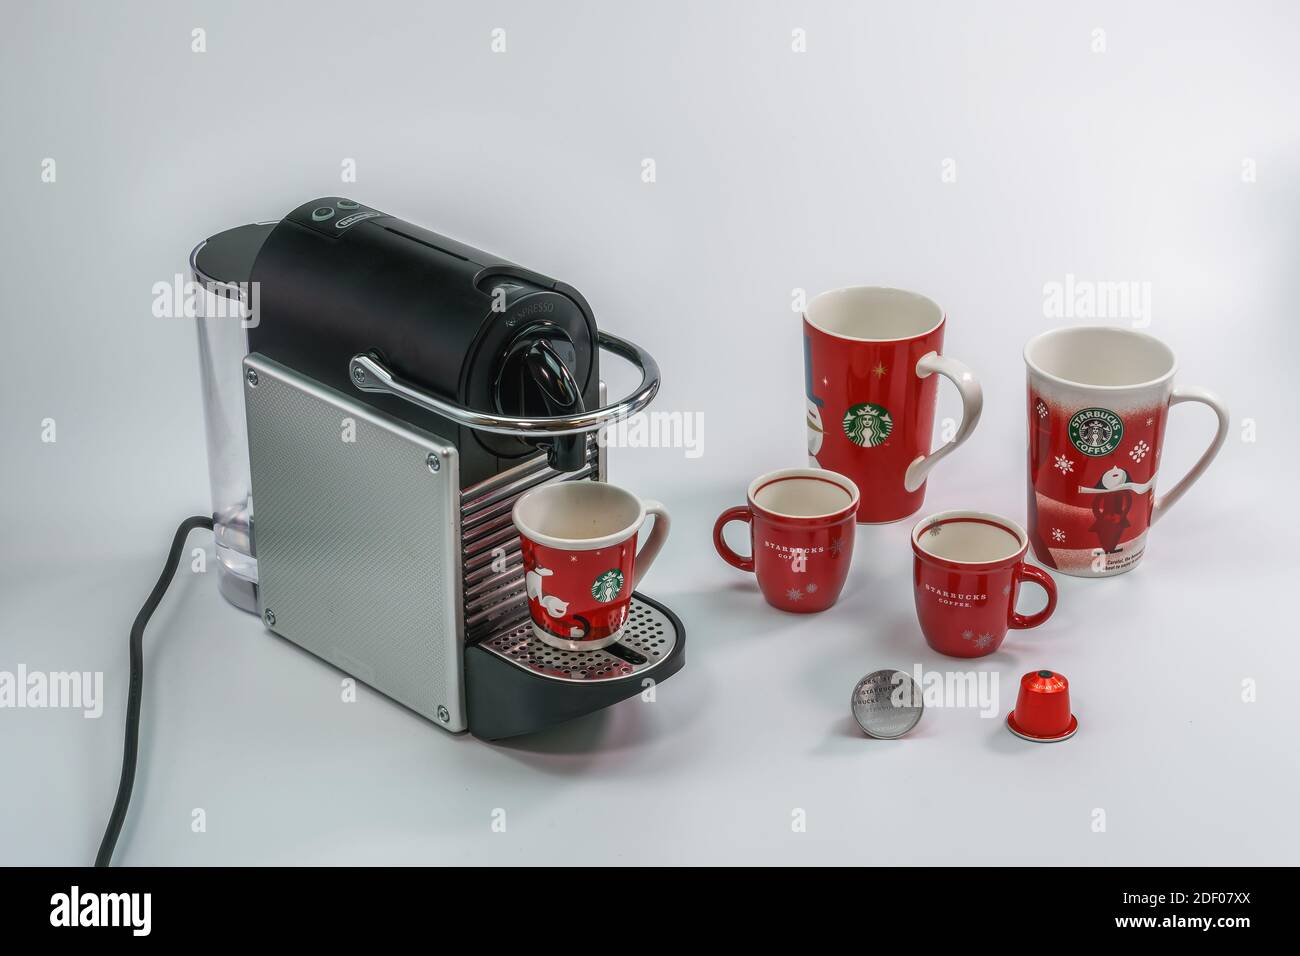 Starbucks Kaffee Weihnachten Espresso Tassen neben Nespresso-Maschine.  Vielzahl von gebrandeten Urlaub Tassen hinter Aluminium-Kapseln verwendet,  um Getränke zu machen Stockfotografie - Alamy